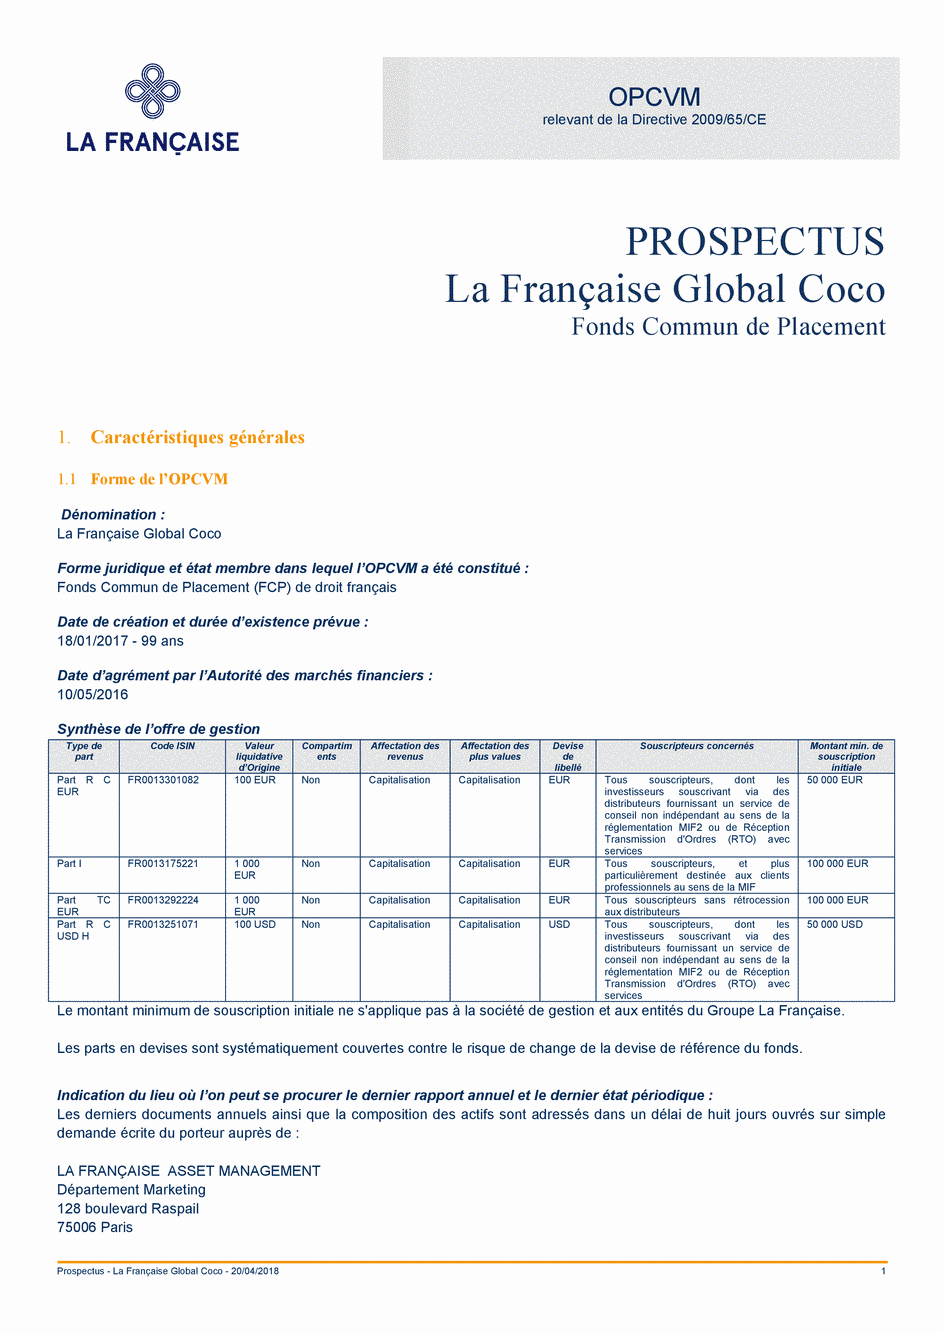 Prospectus La Française Global Coco - Part S - 20/04/2018 - Français